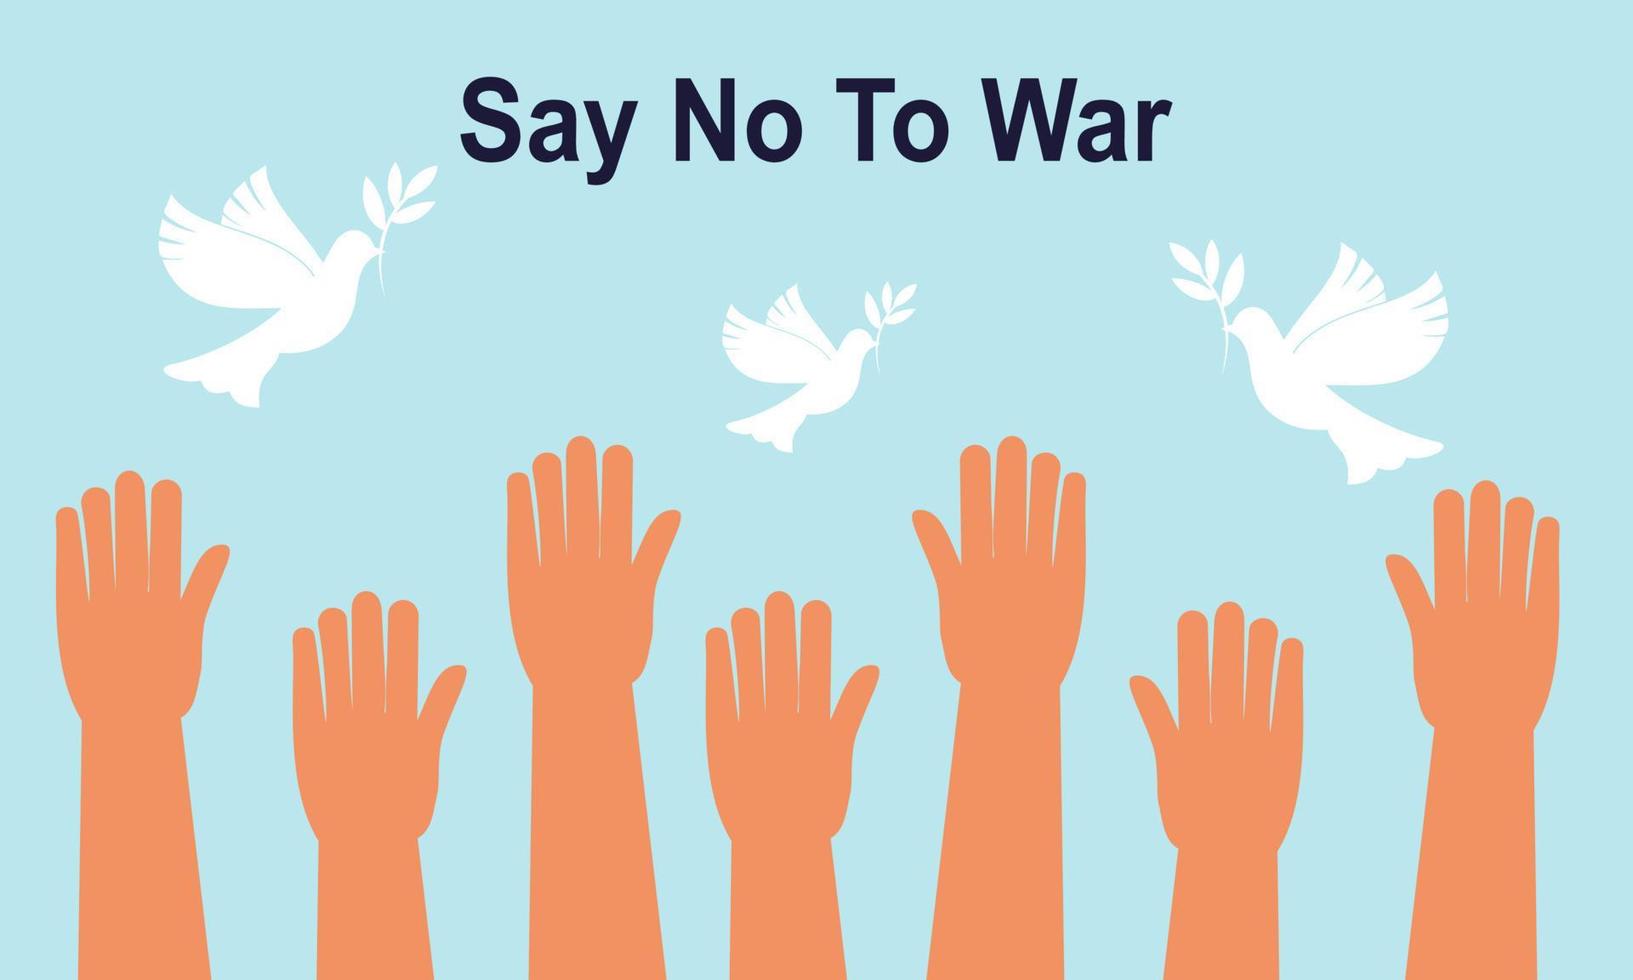 människor är emot krig. säga nej till krig. fred till världen illustration vektor